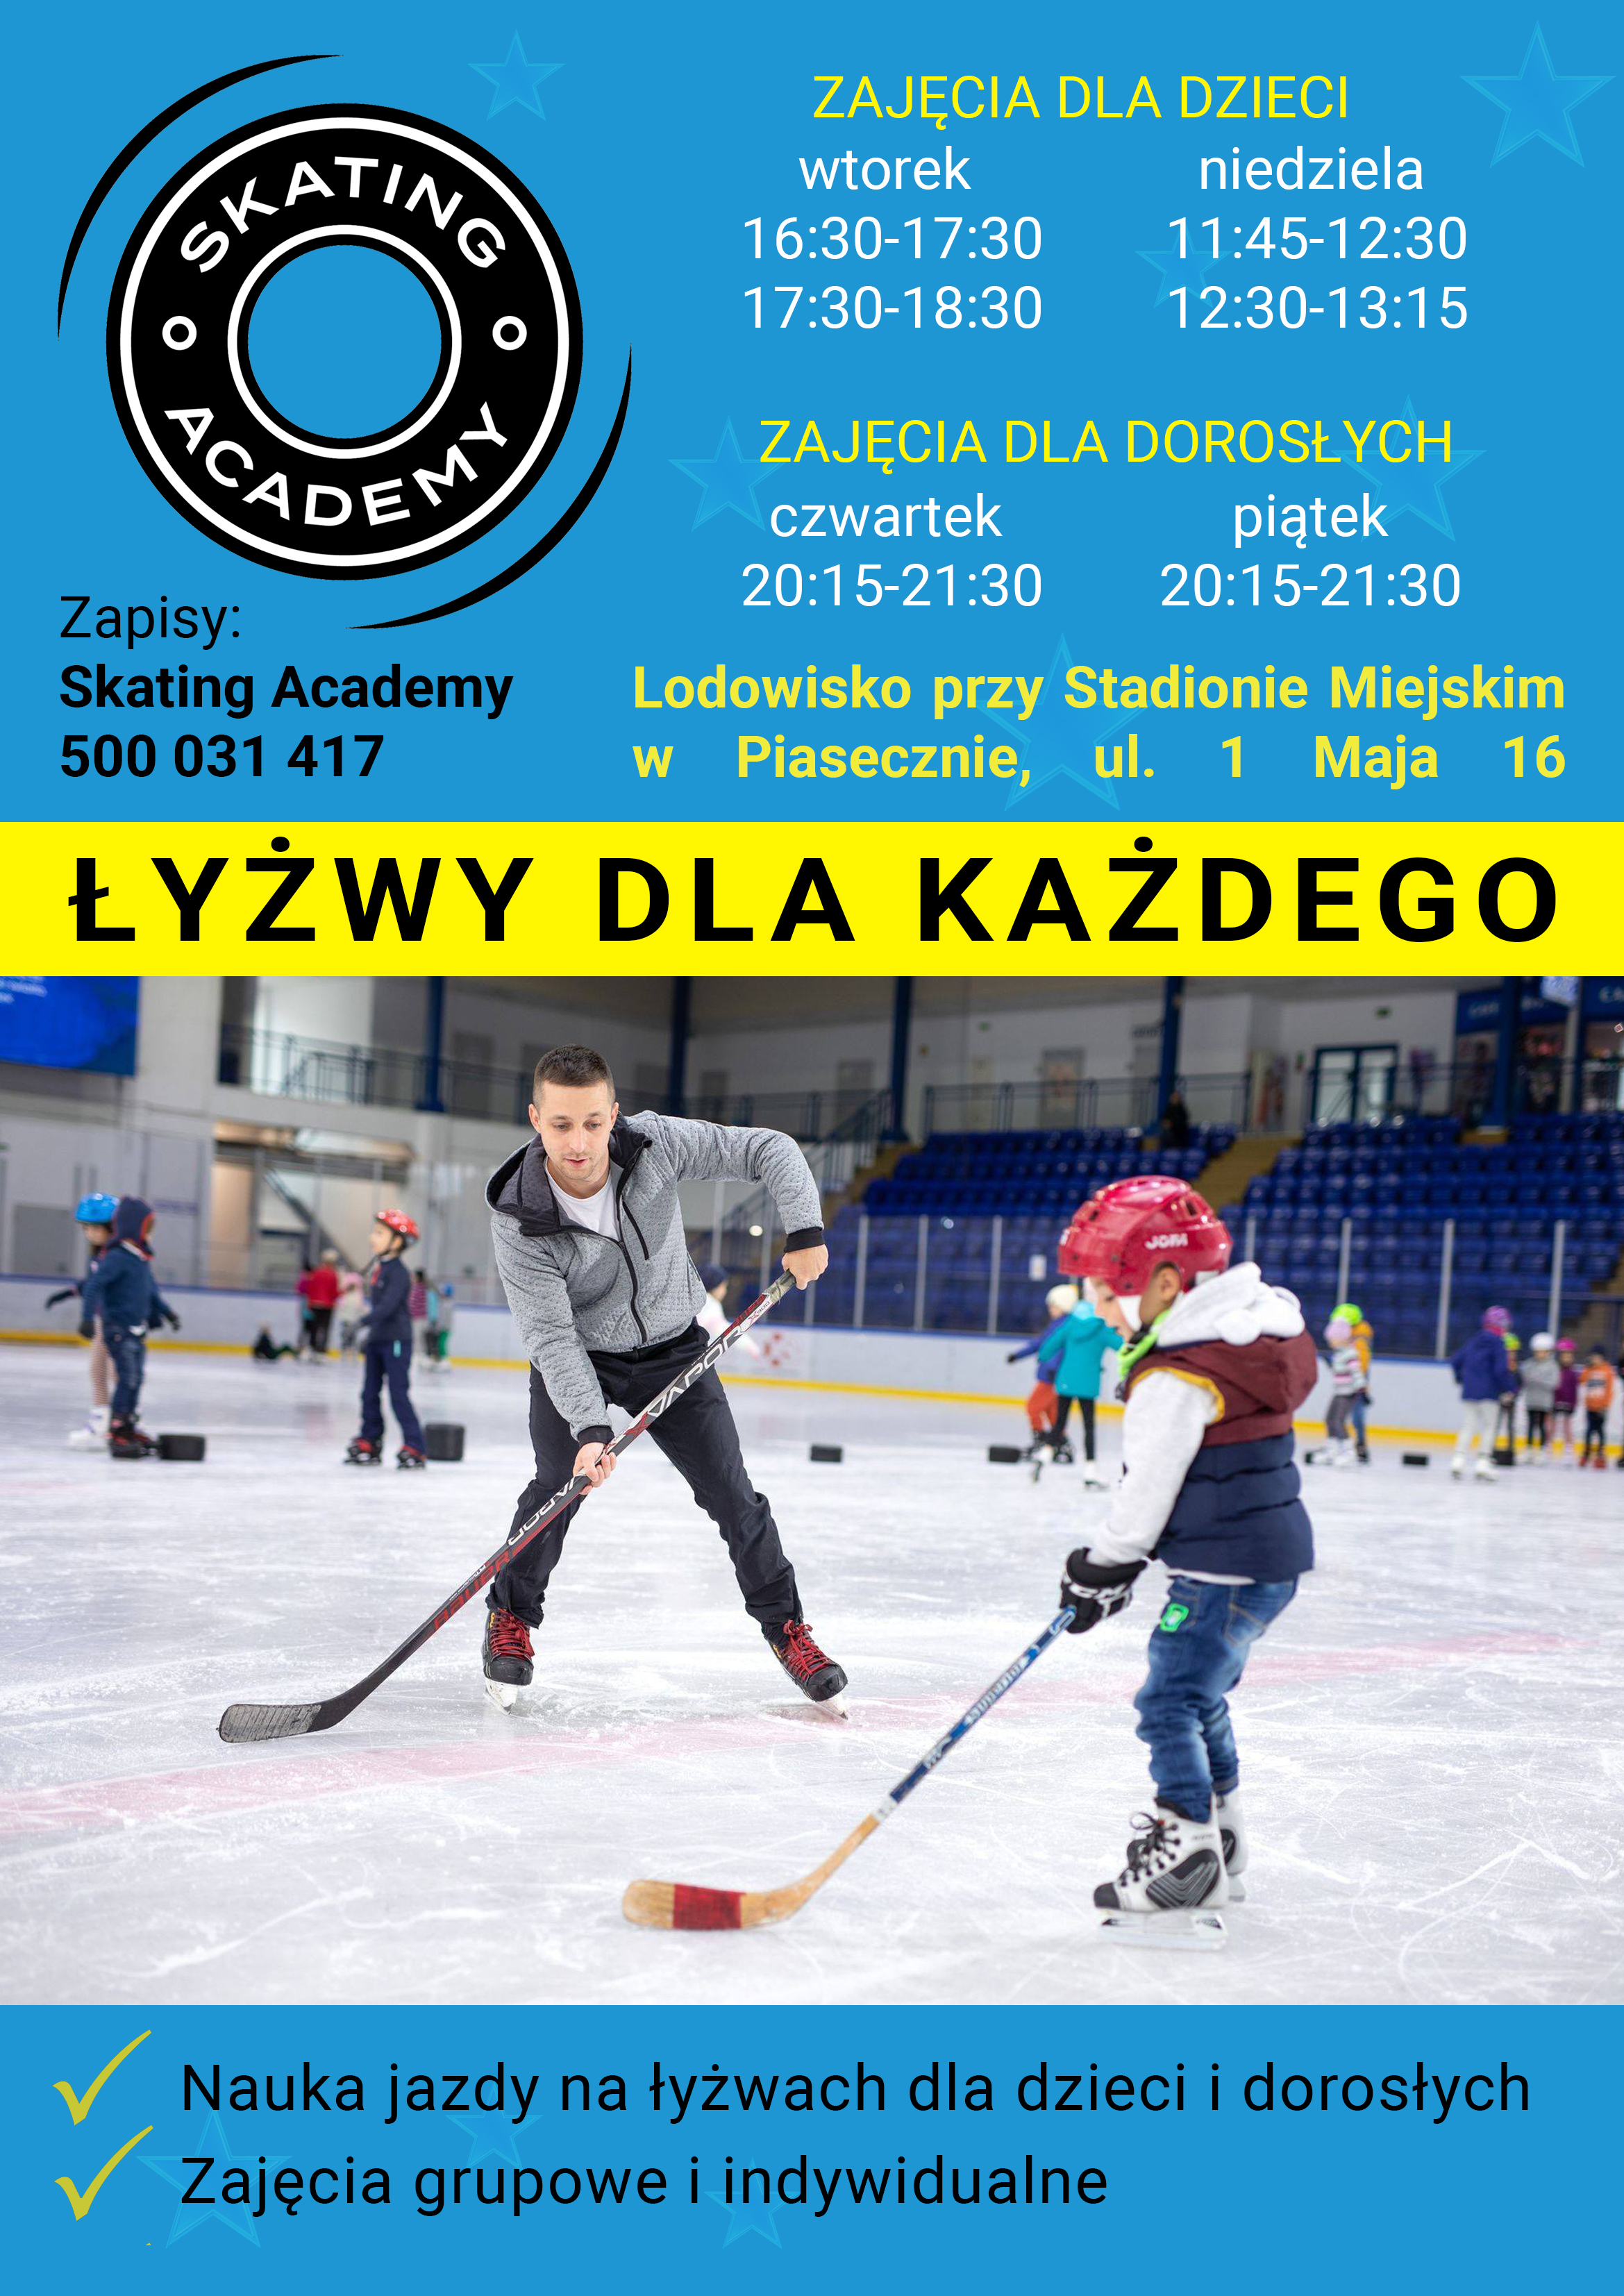 Rusza kolejny sezon piaseczyńskiego lodowiska. Na plakacie zdjęcie trenera i dziecka grającego w hokeja oraz informacje o zajęciach i dane kontaktowe.